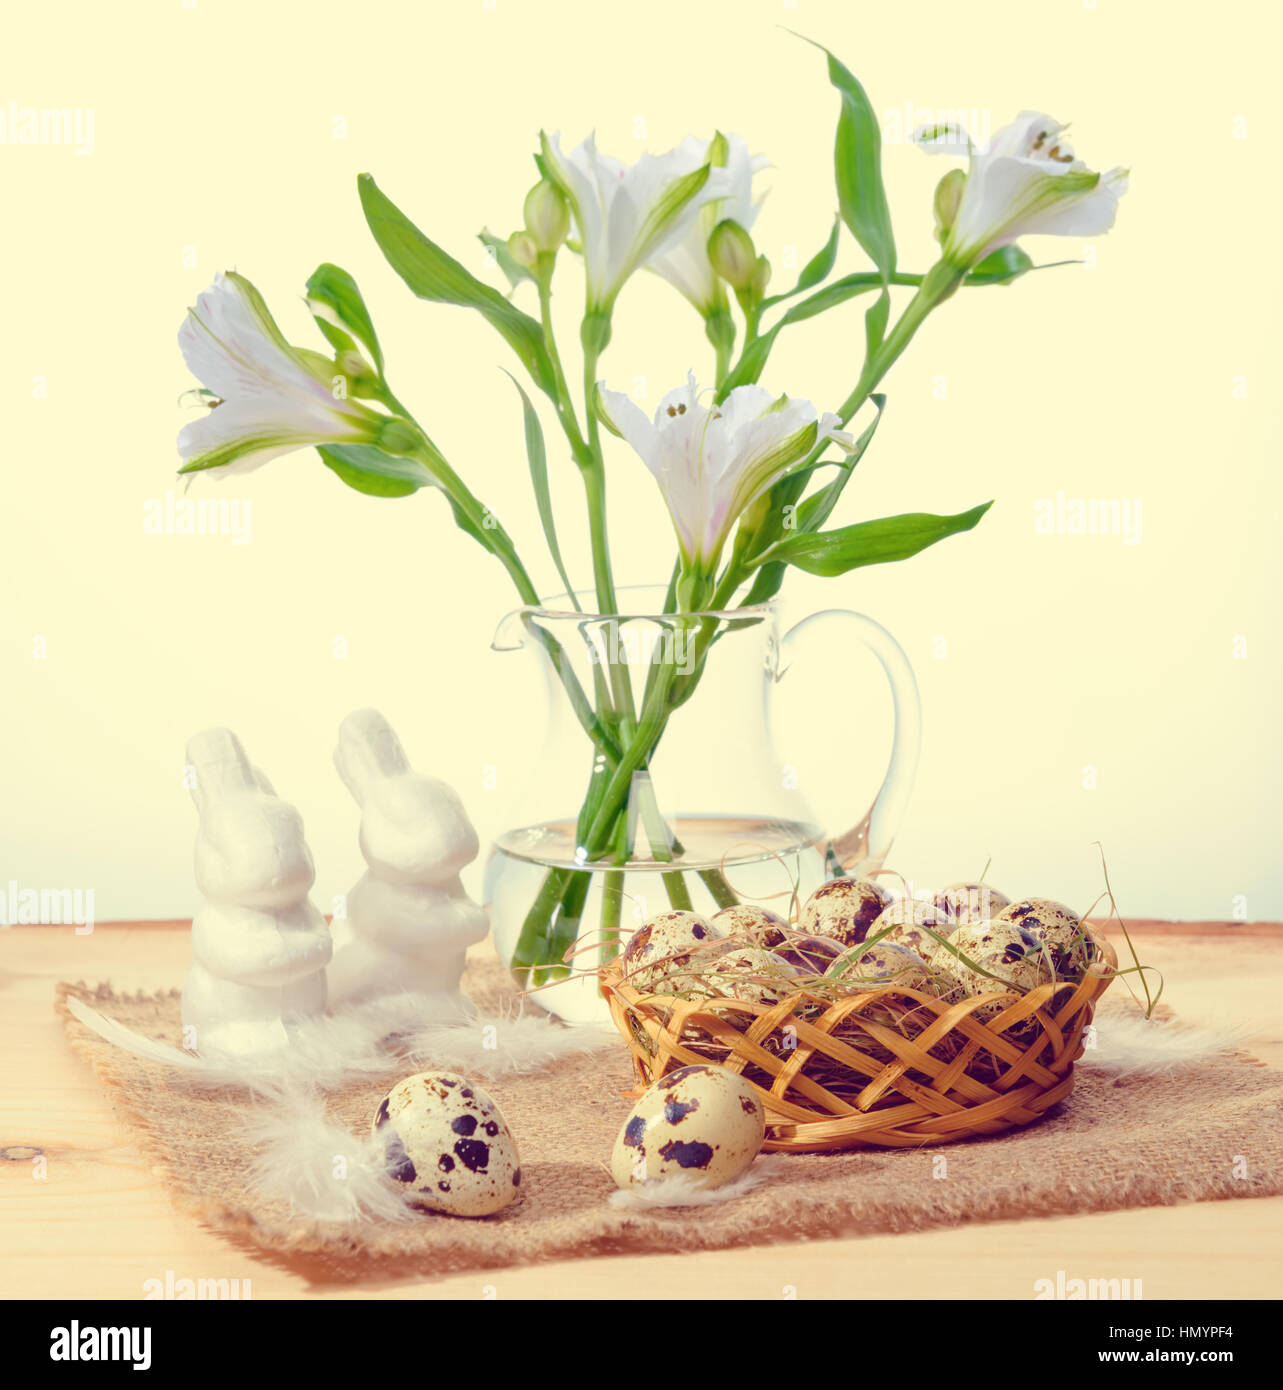 Wachteleier mit Stroh und Federn in Korb, Hasen weiß auf Sackleinen und Lilie Blumenstrauß in Vase, Ostern-Konzept Stockfoto